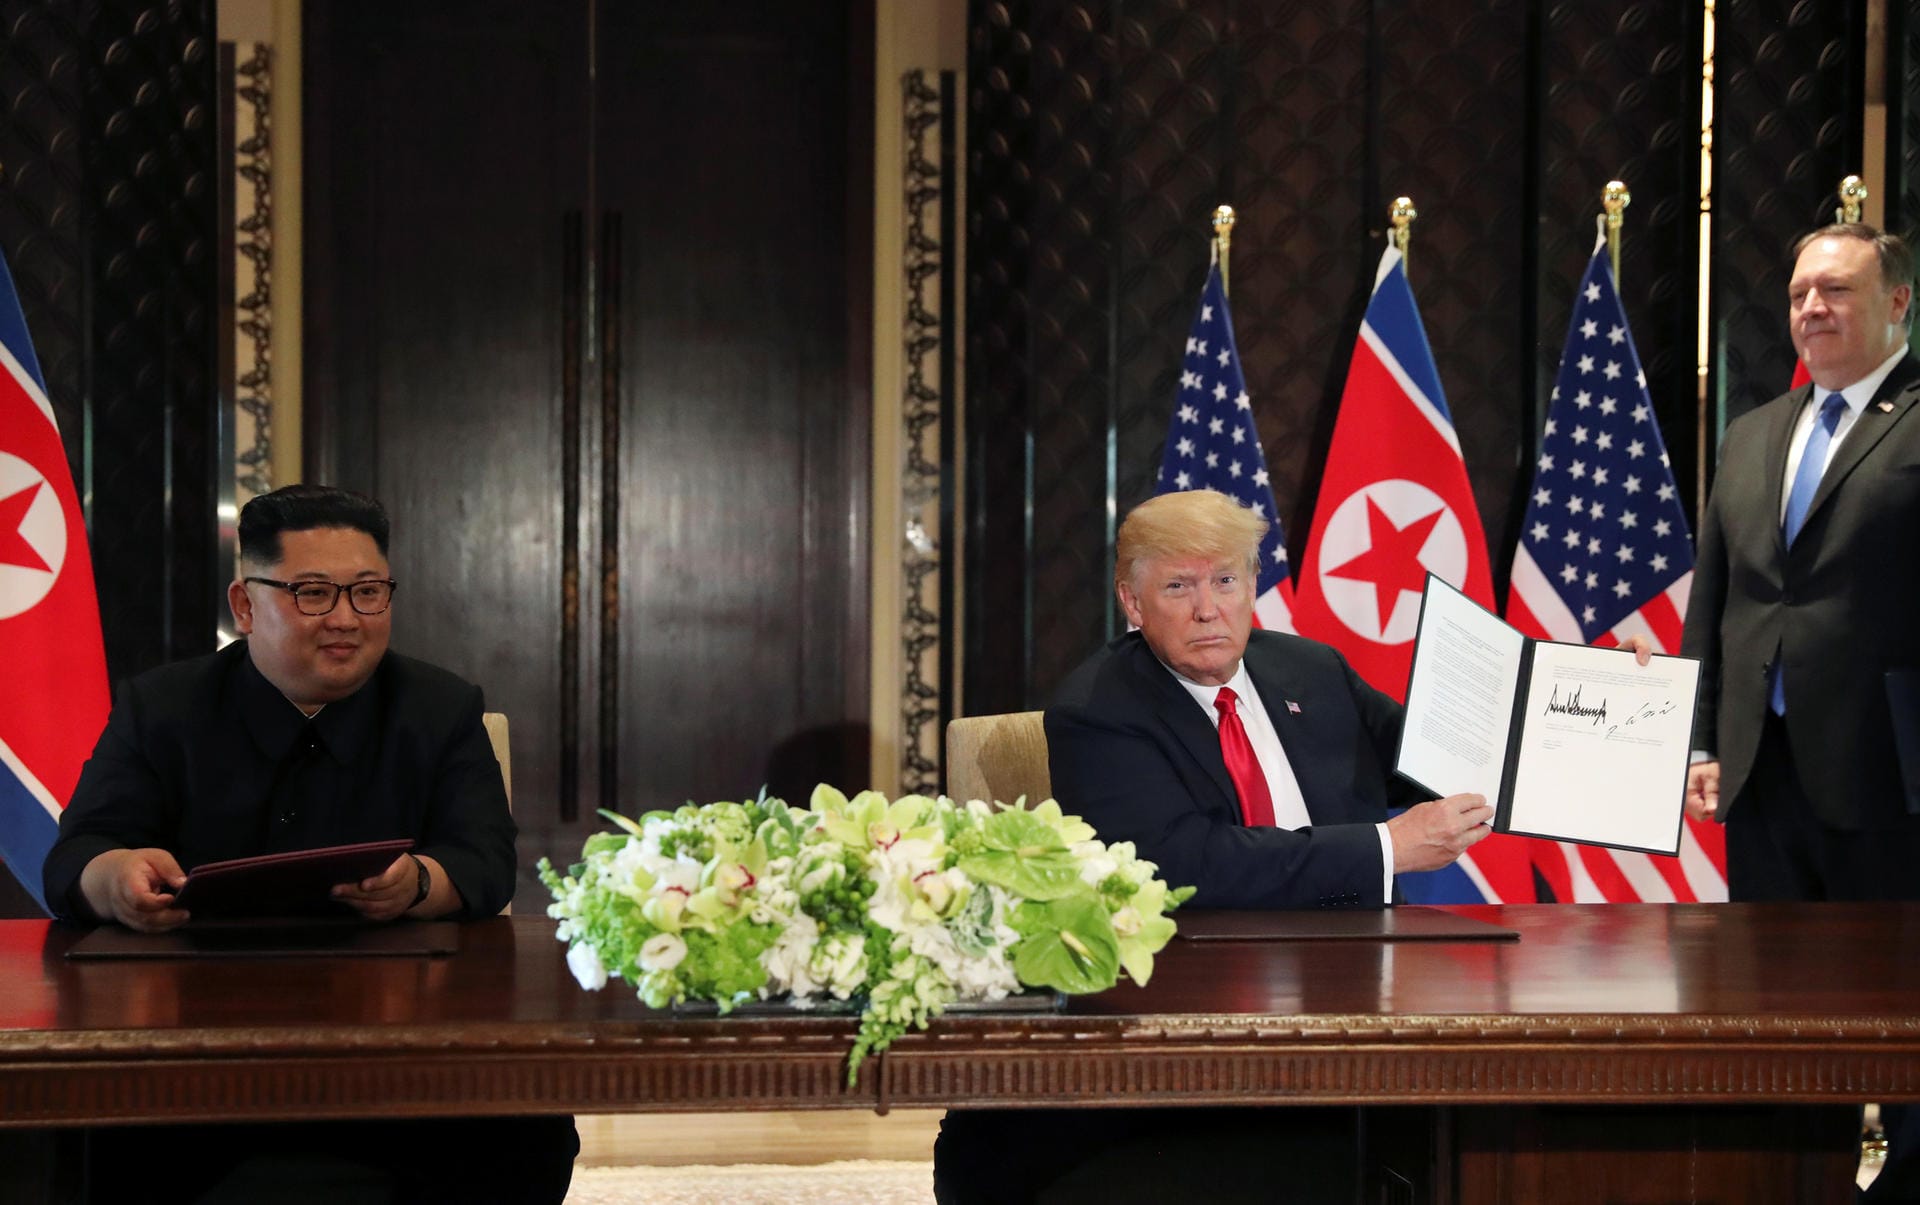 Anschließend wurde klar, um was für eine Erklärung es sich handelt: Kim erklärte sich zu einer kompletten atomaren Abrüstung auf der koreanischen Halbinsel bereit. Im Gegenzug sichert Trump Sicherheitsgarantien zu.